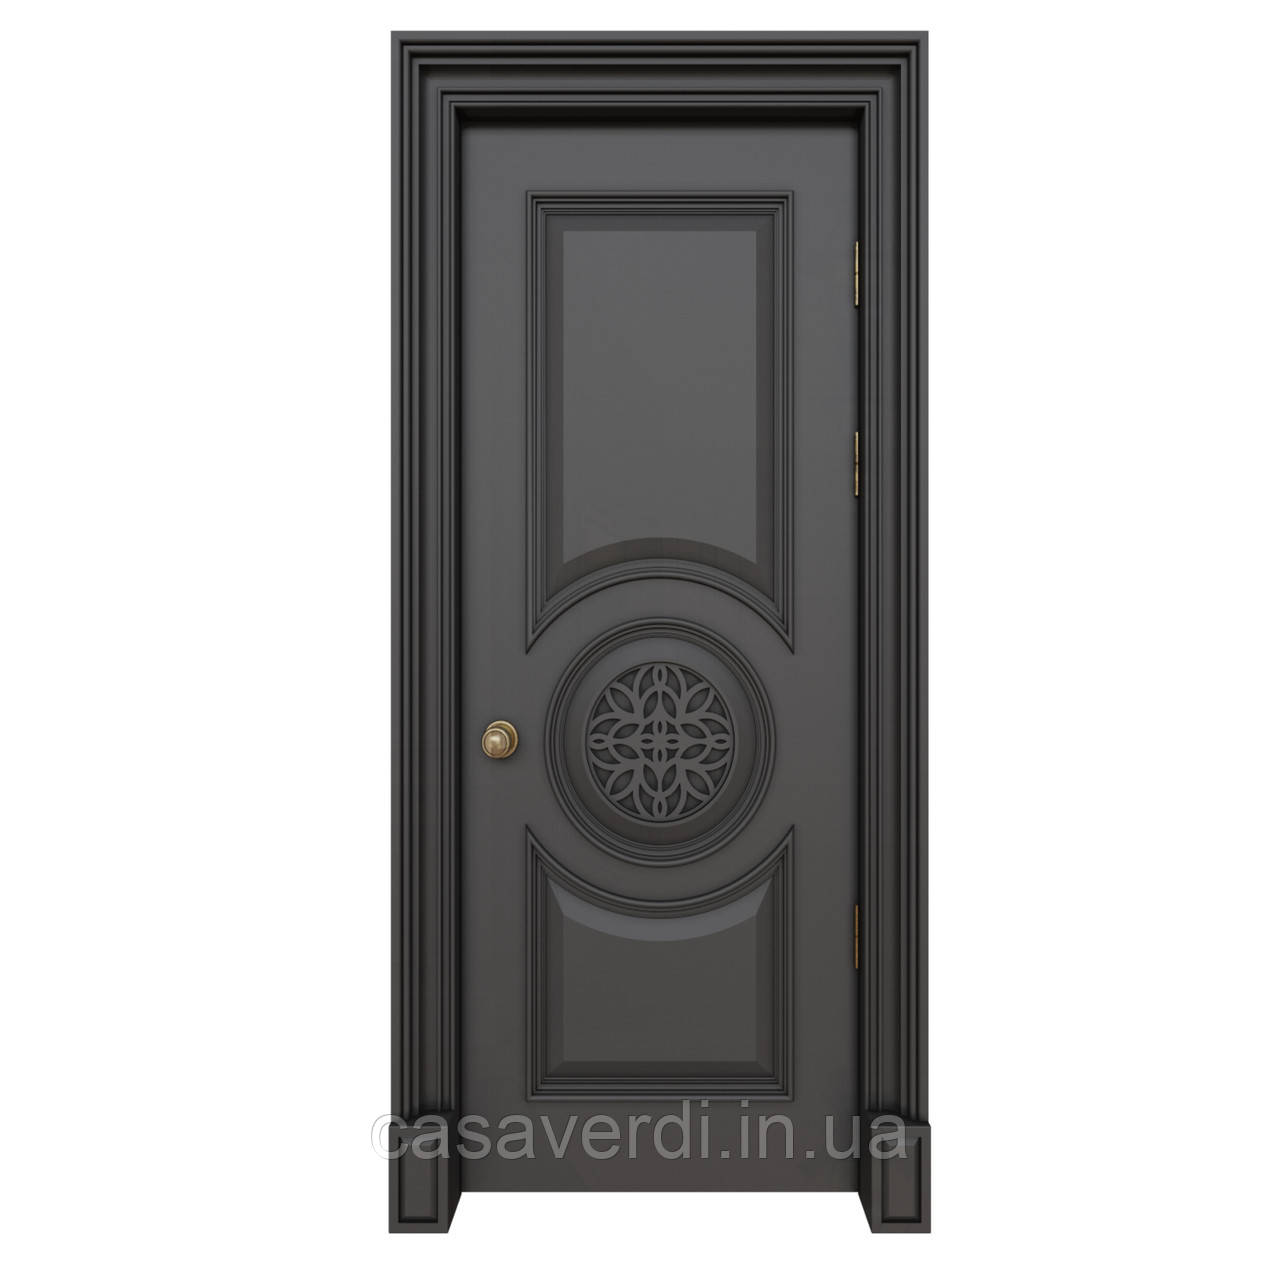 Міжкімнатні двері Casa Verdi Napoli 6 з масиву вільхи чорна графіт